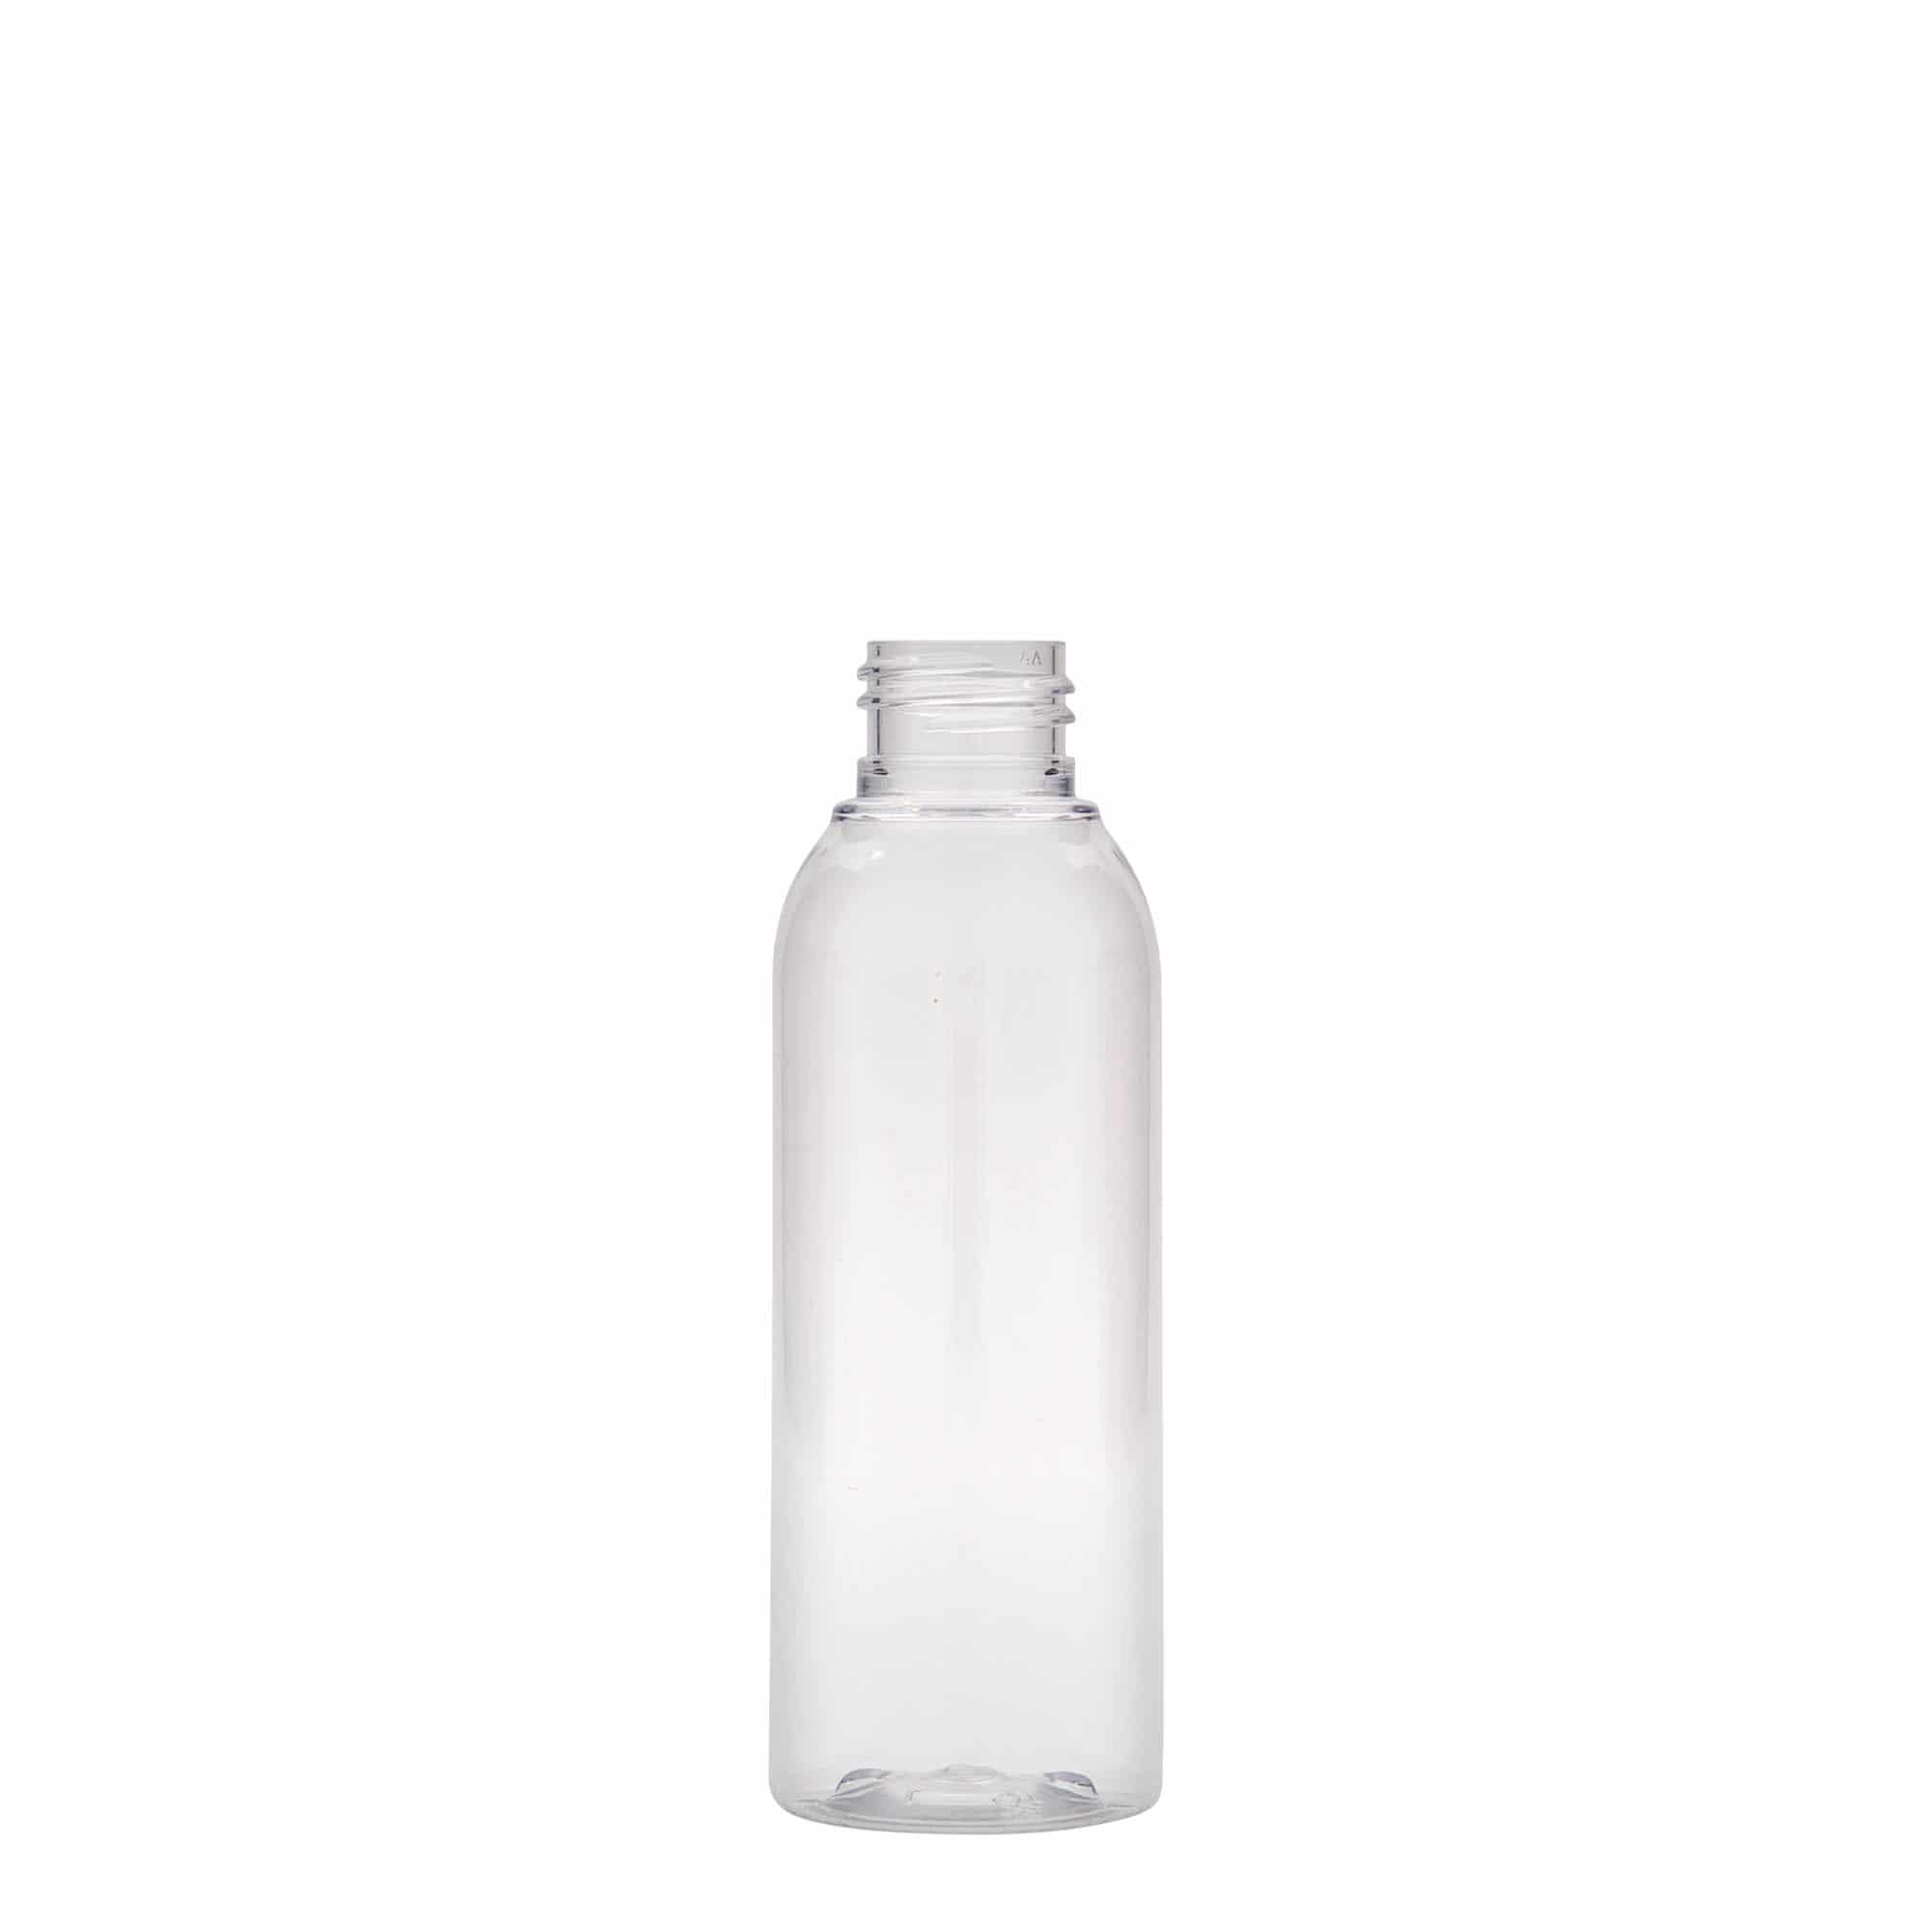 125 ml PET bottle 'Pegasus', plastic, closure: GPI 20/410